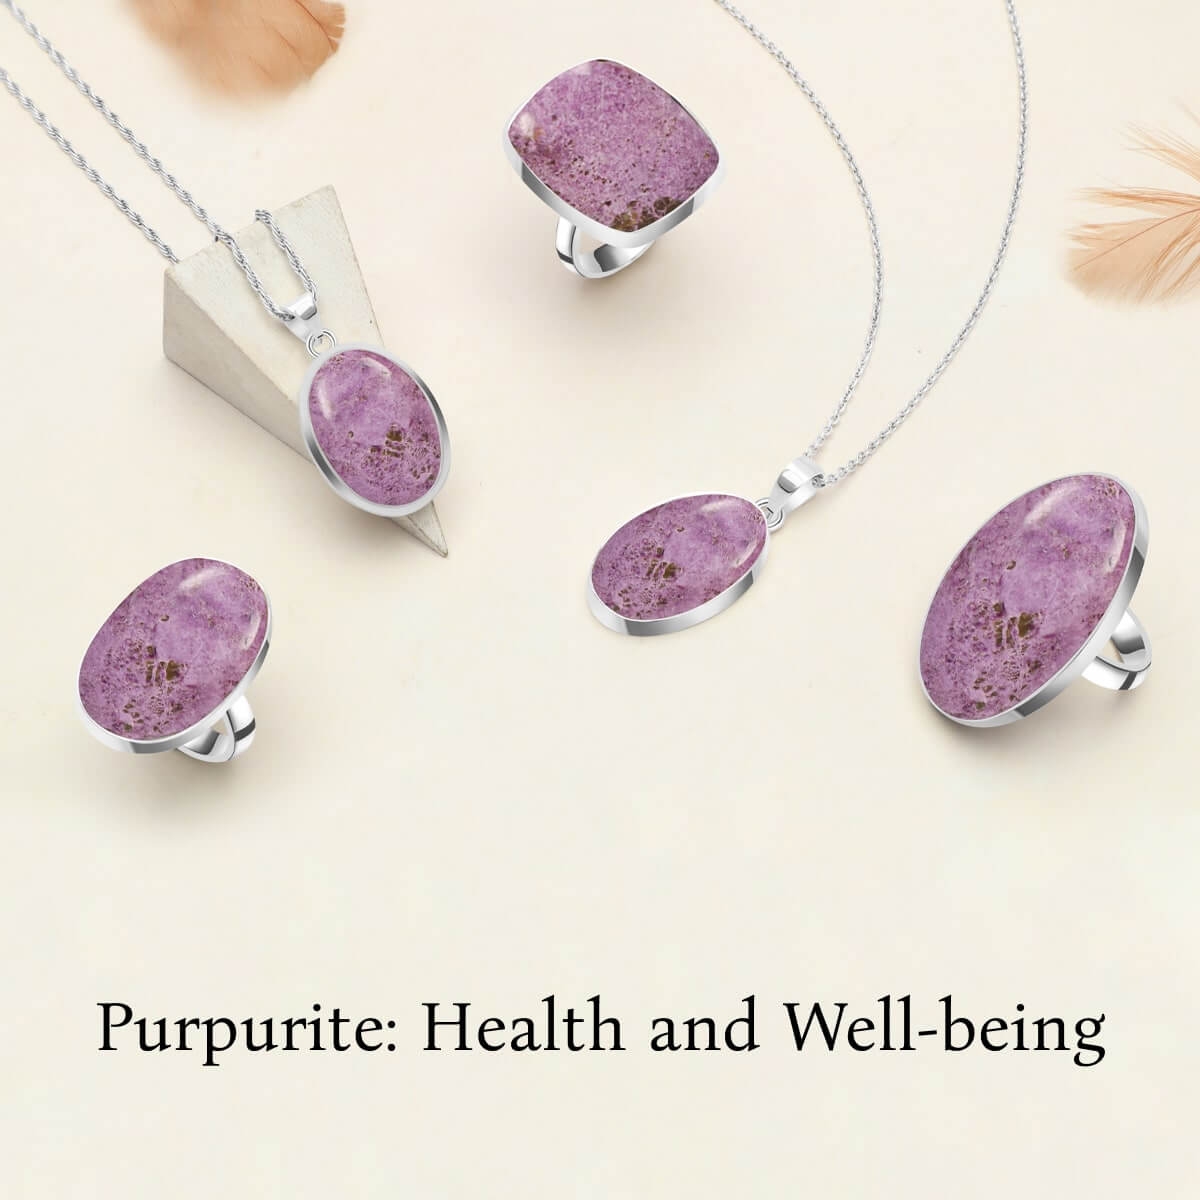 Purpurite Healing properties and benefits